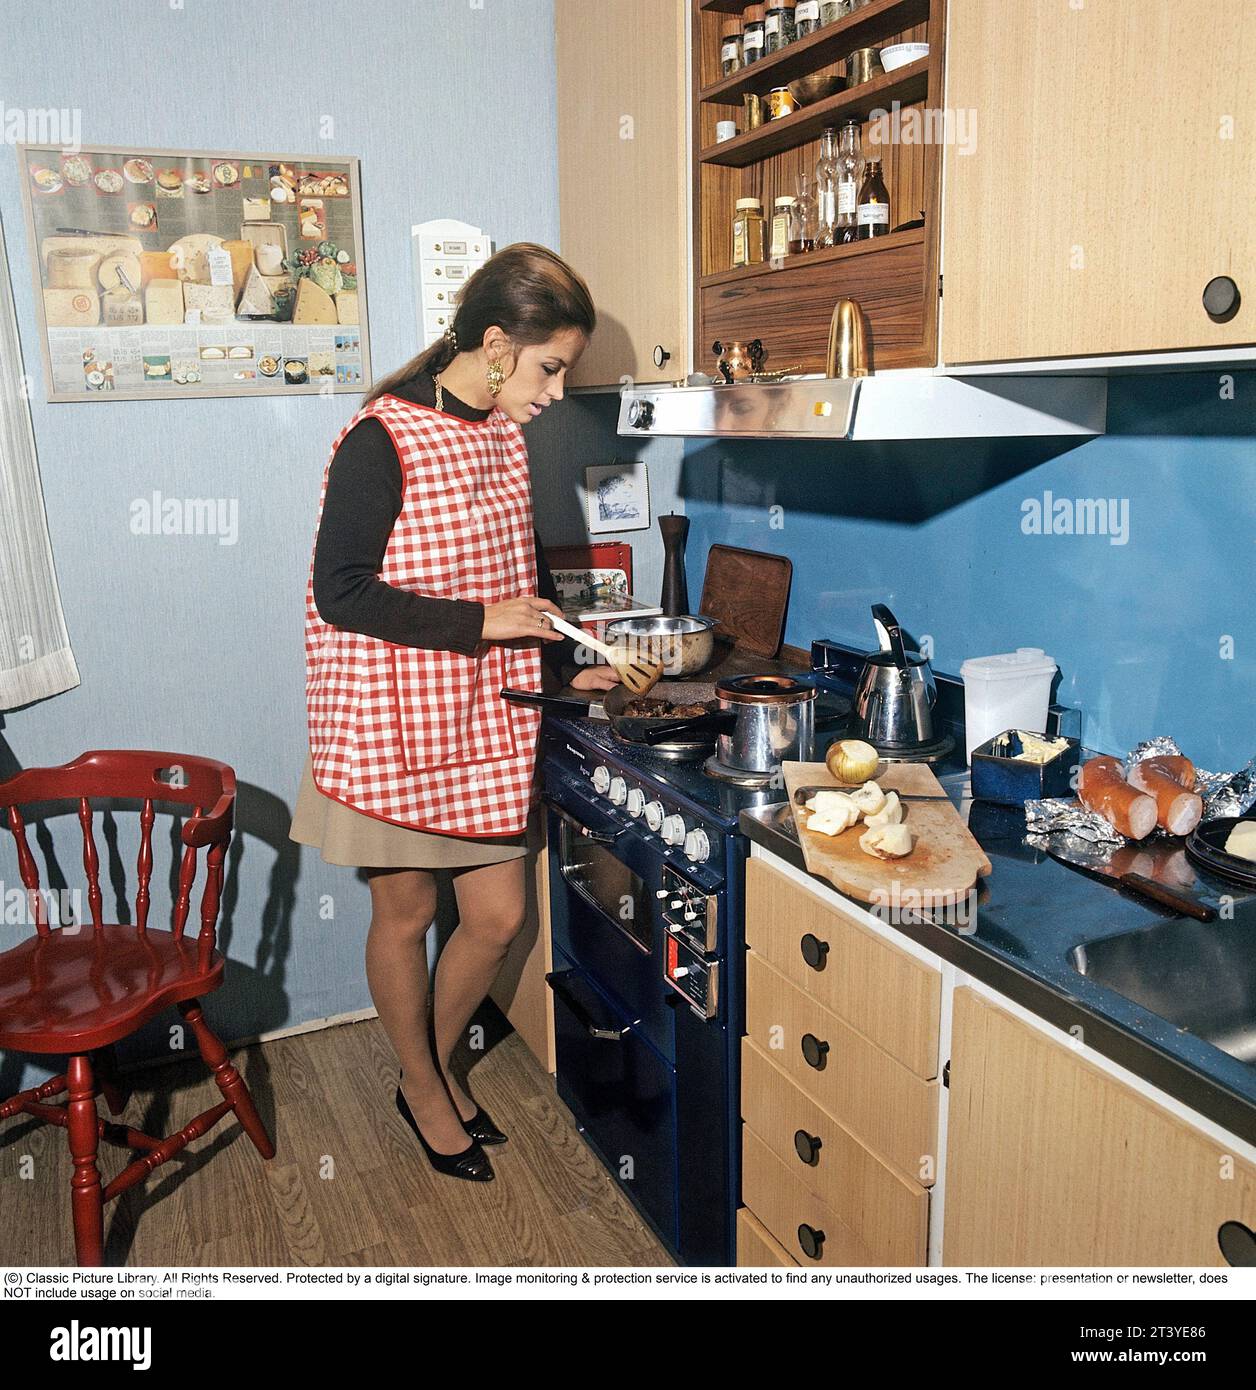 Dans la cuisine 1970s. Actrice, chanteuse Lill-Babs Svensson photographiée dans la cuisine typique des années 70 en train de cuisiner un repas. Suède 1972. Kristoffersson Banque D'Images